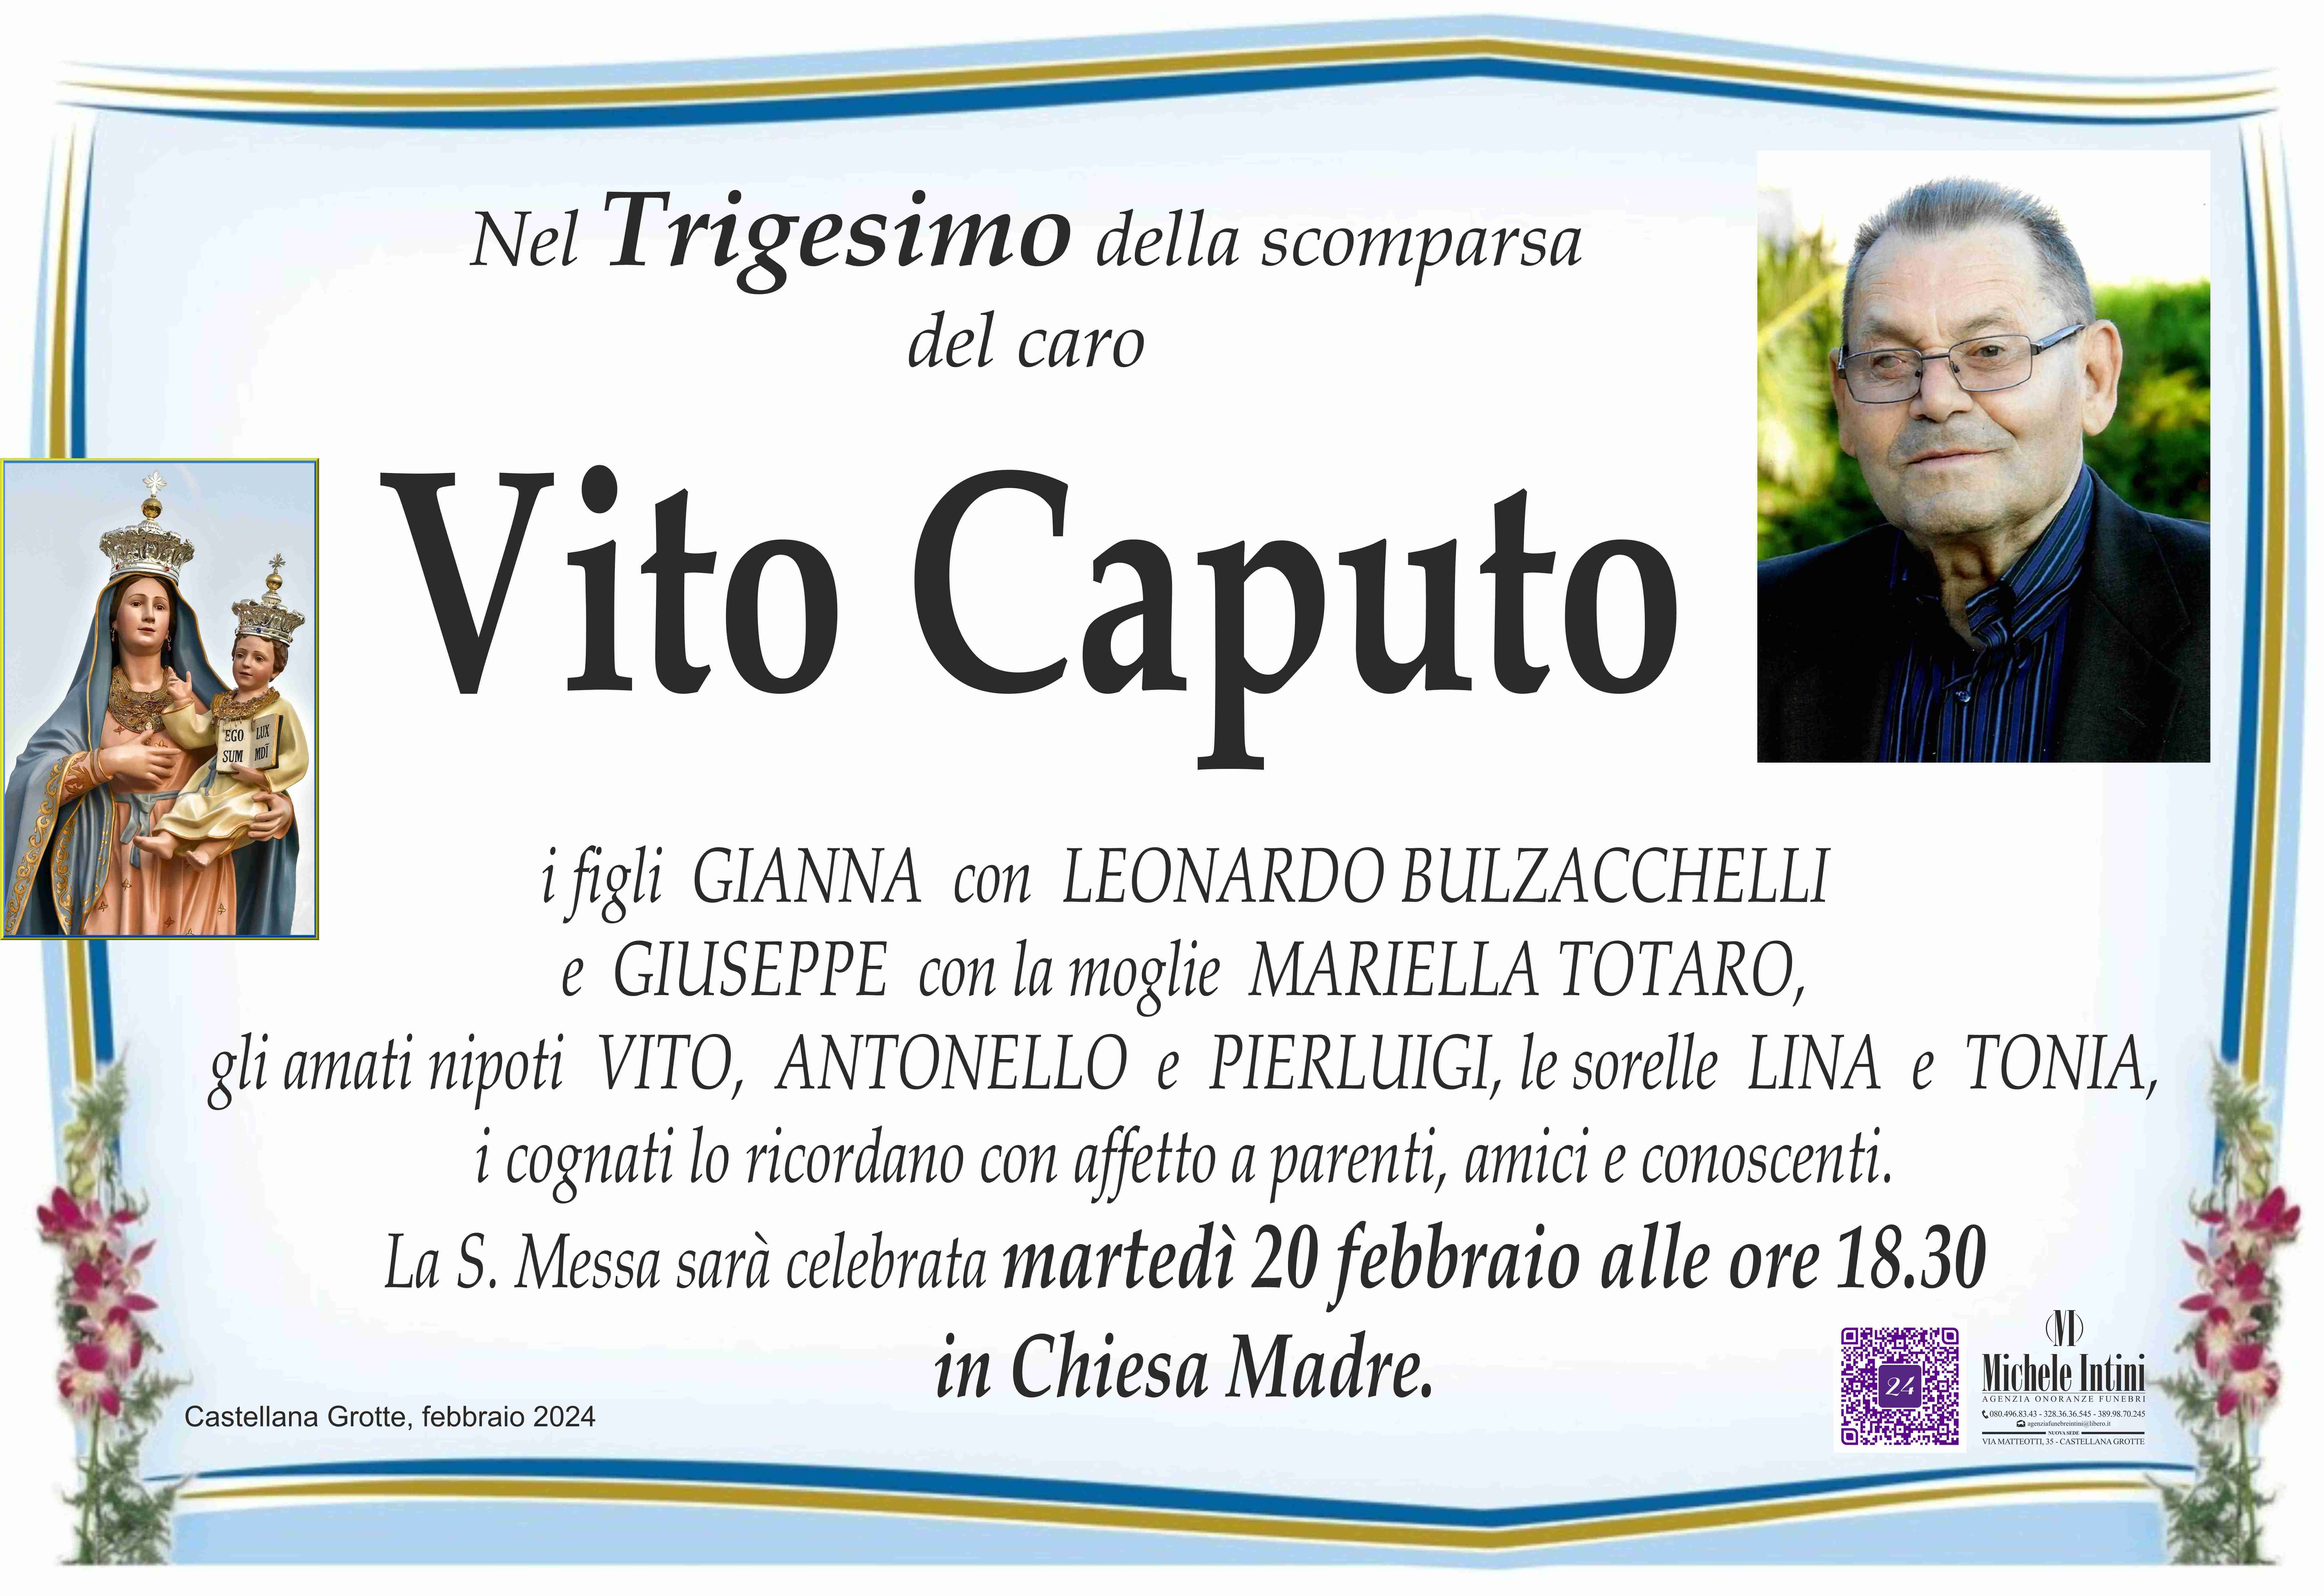 Vito Caputo